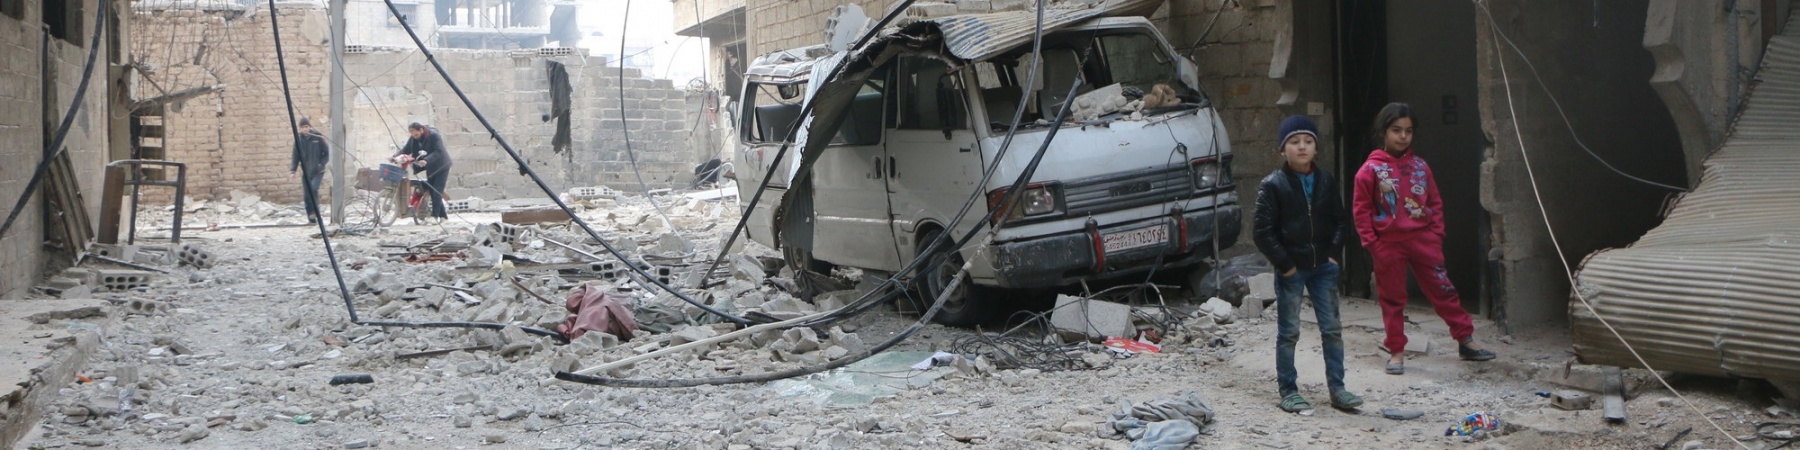 Siria bombardamenti